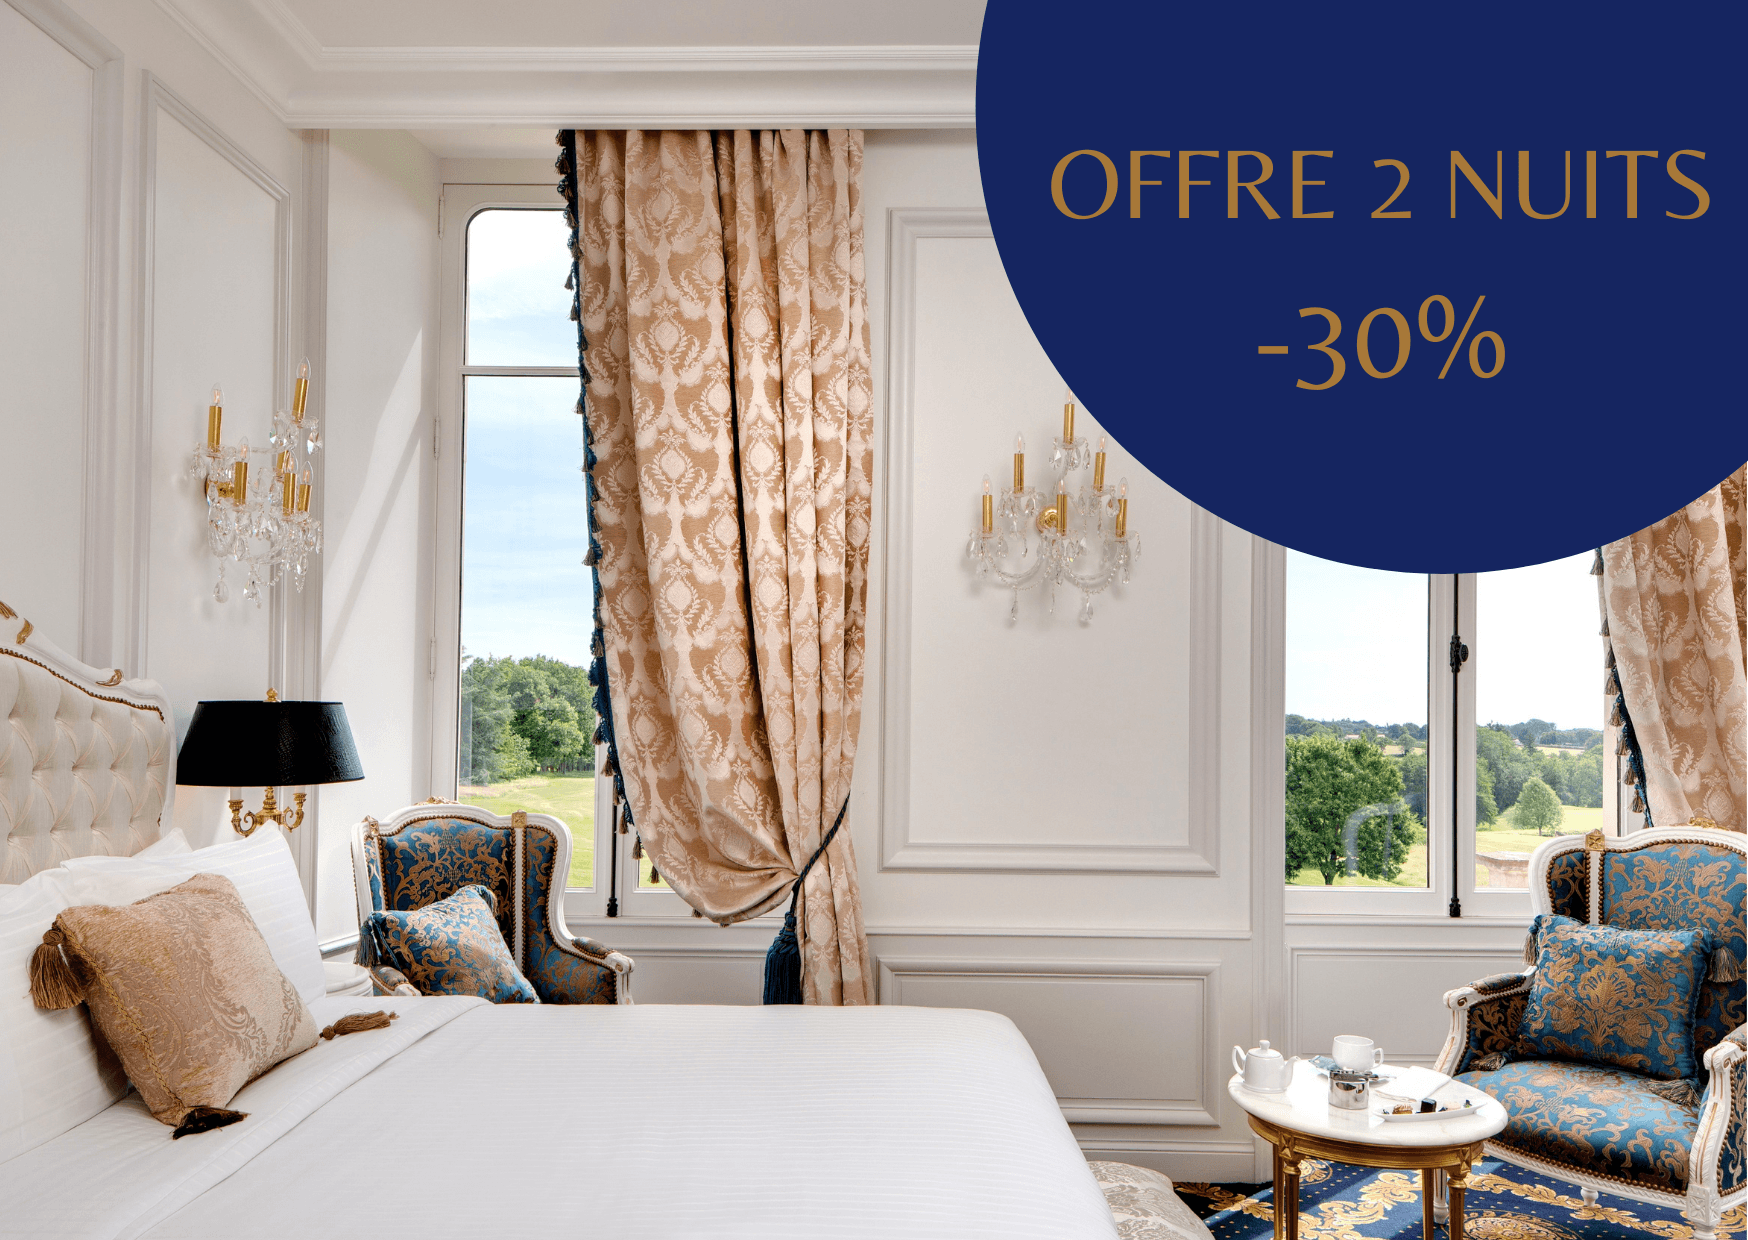 offre spéciale deux nuits - Séjour France - Marais Poitevin - Hôtel Alexandra Palace***** - 20 min de Niort